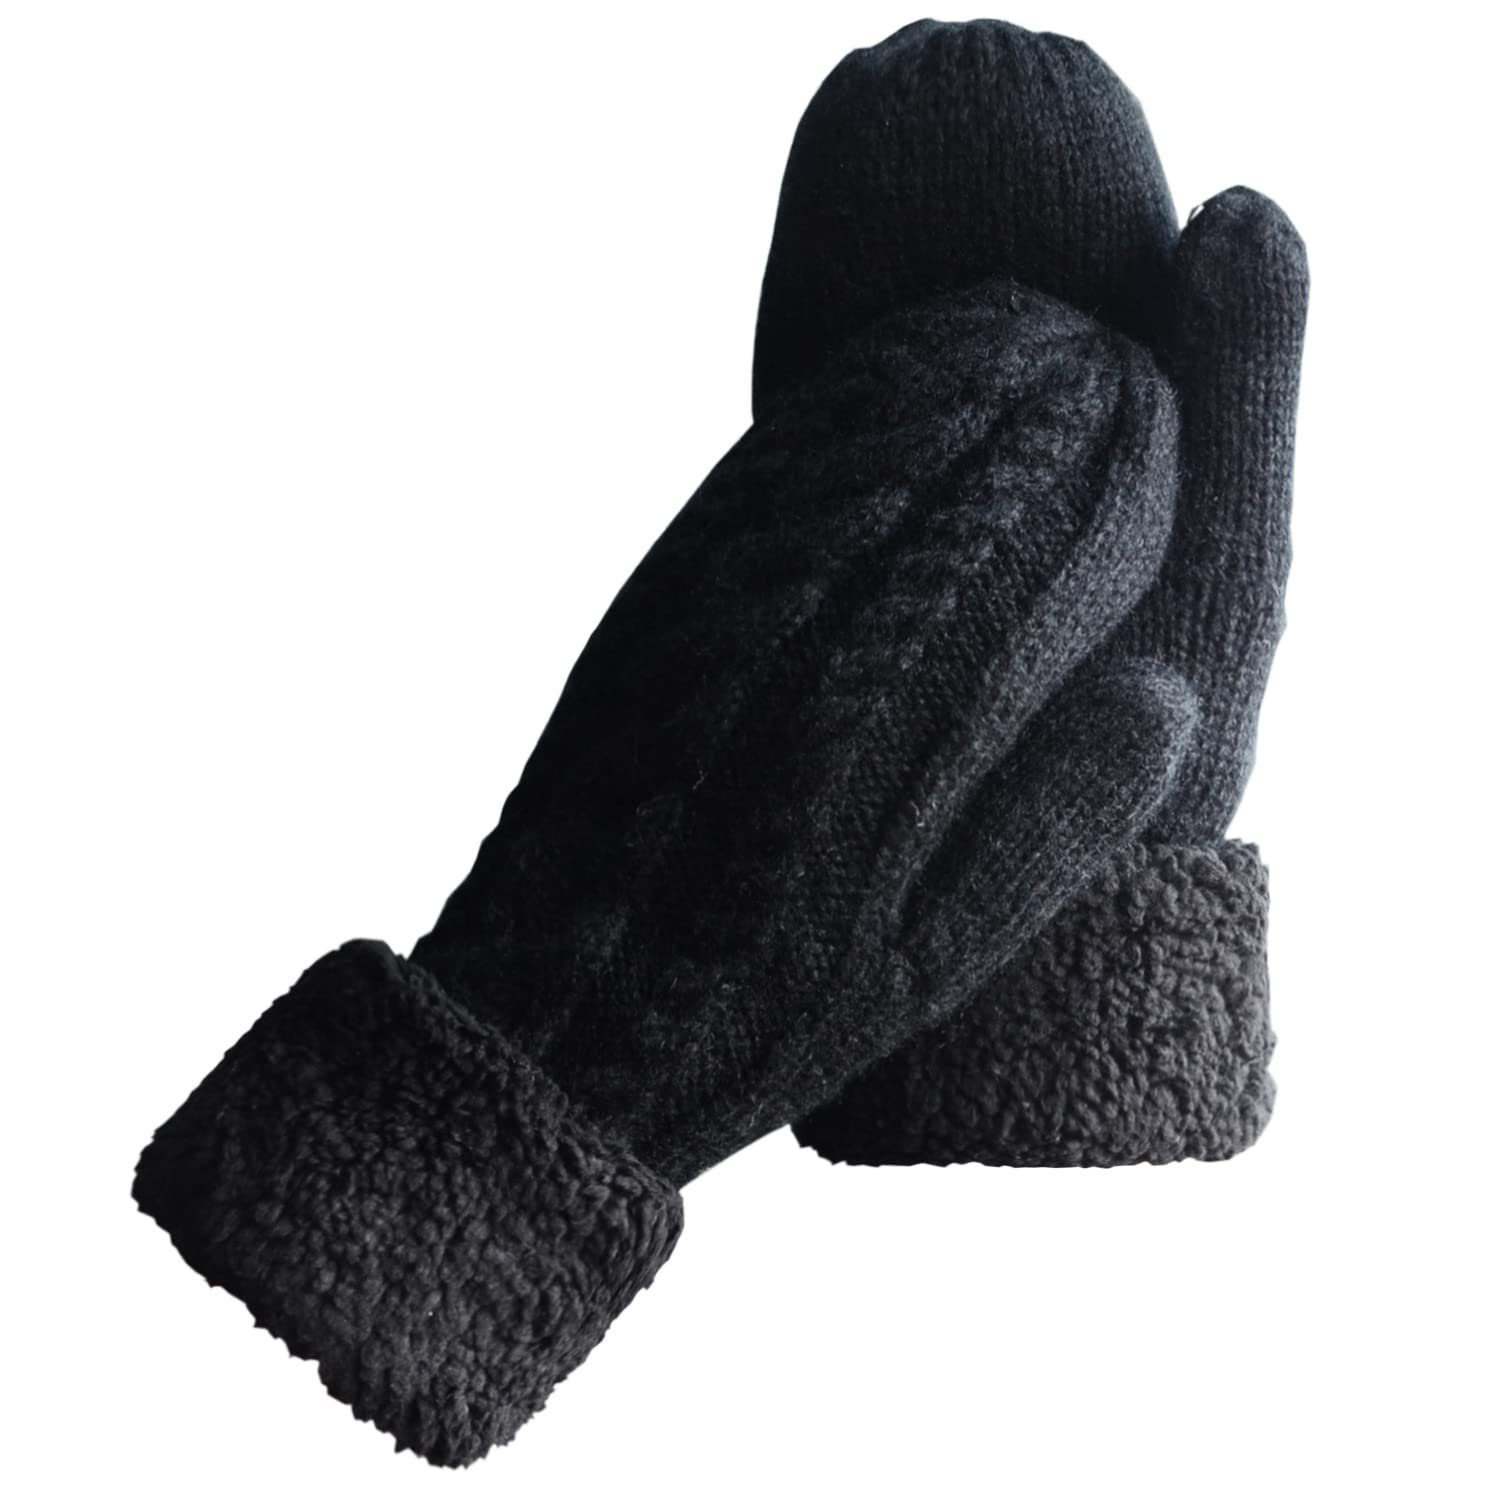 Warm Strickhandschuhe Damen Handschuhe Wolle Fäustlinge Winterhandschuhe Strick Dicke Lining,Gemütliche schwarz YYV